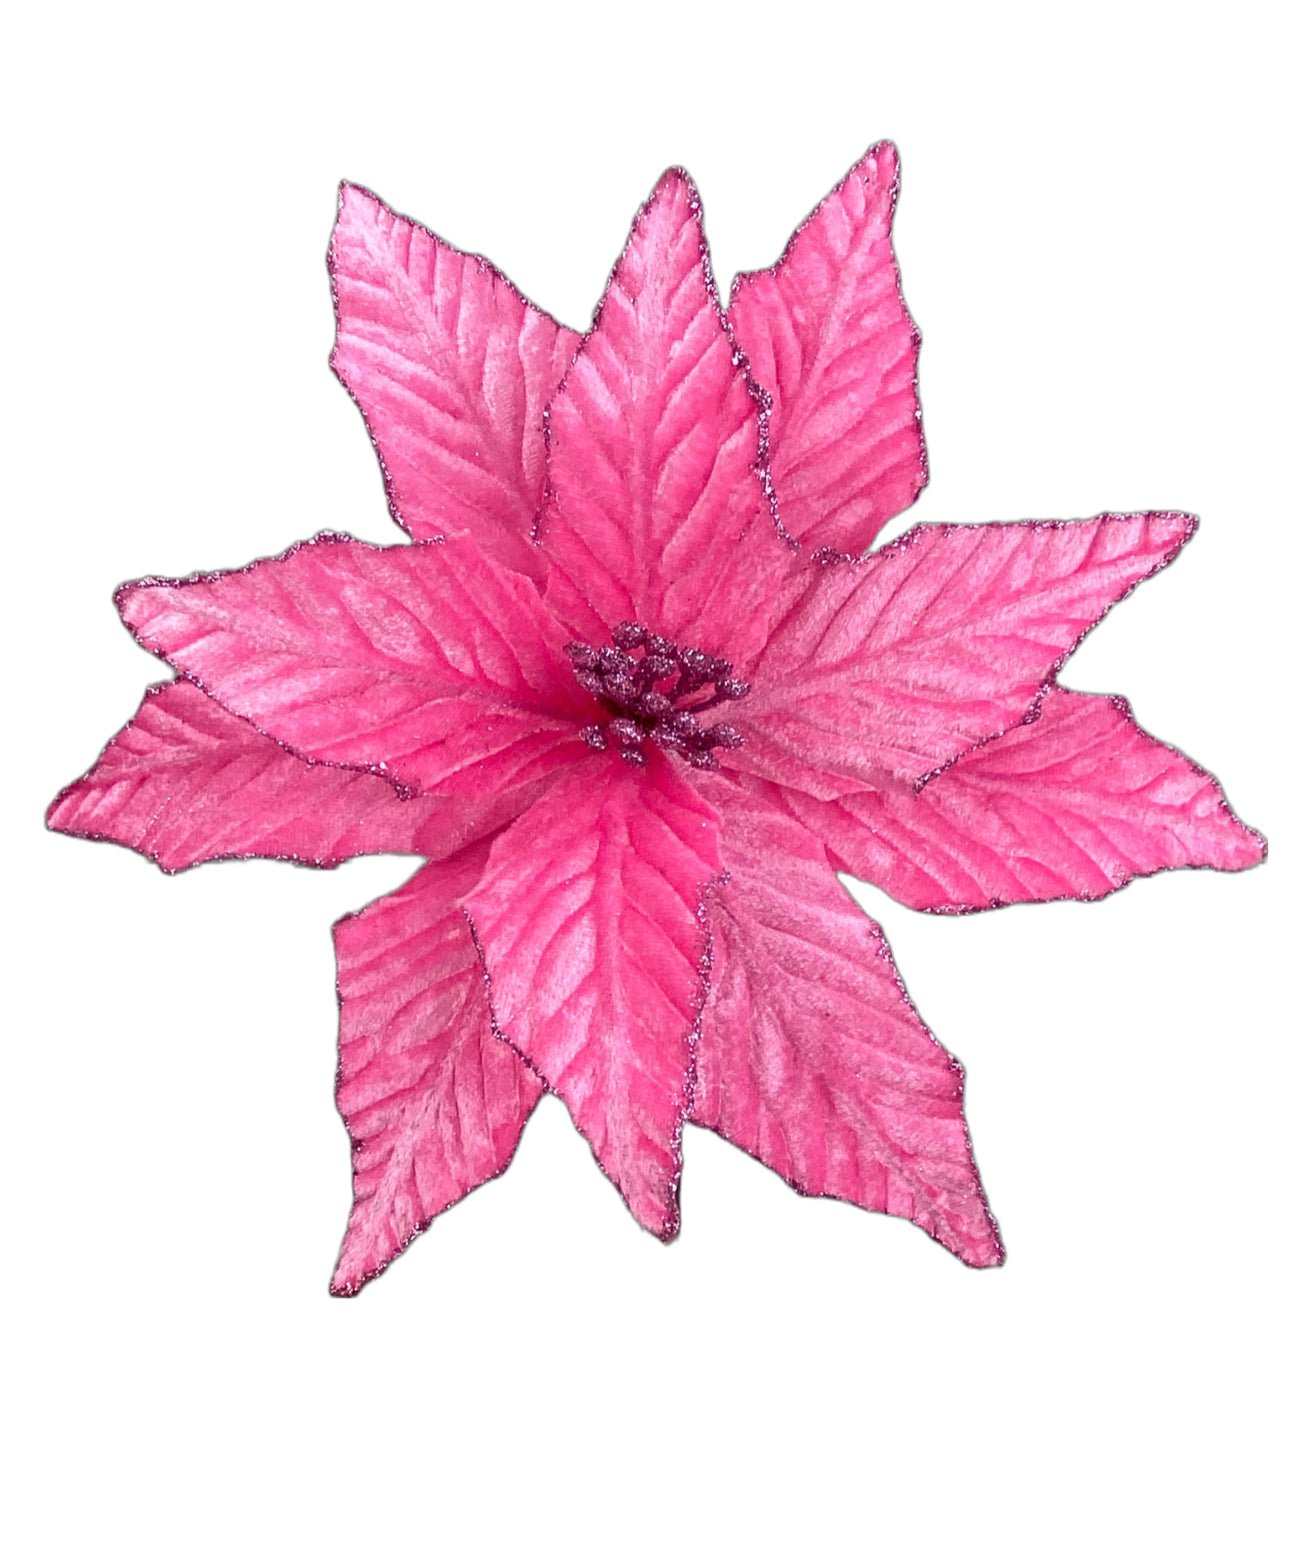 Velvet poinsettia pick - pink - Greenery Market85730PK